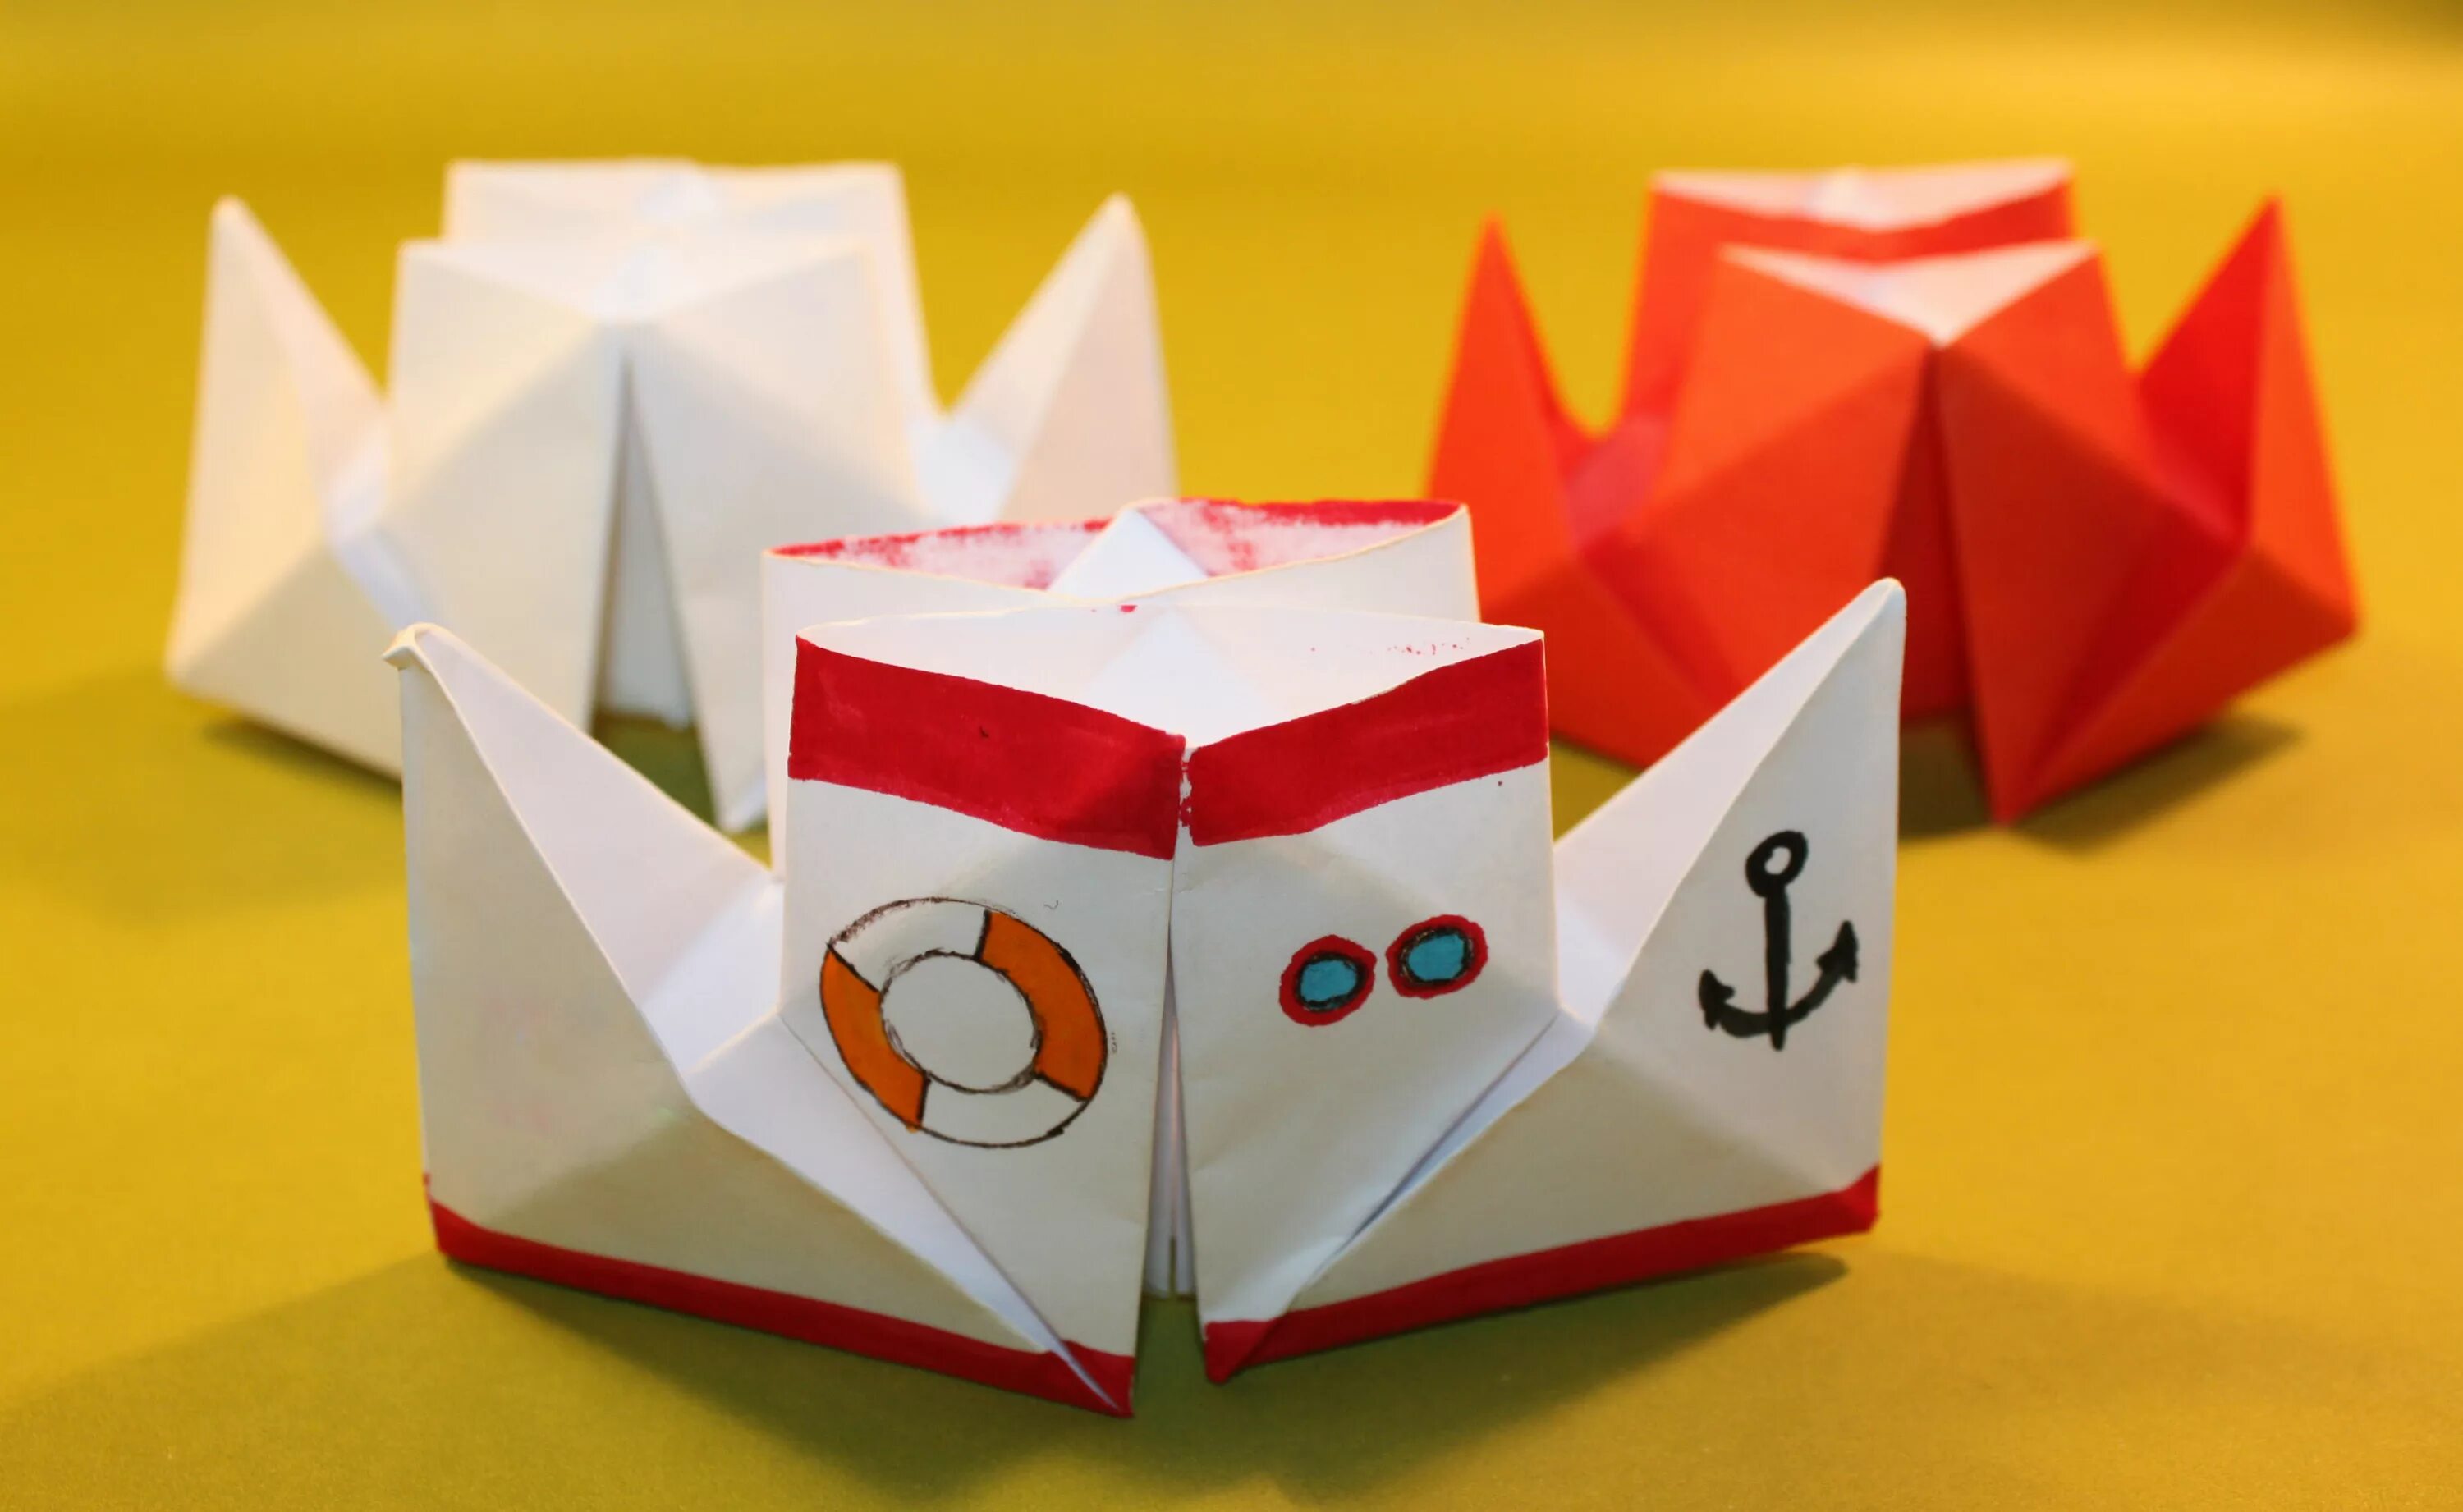 Оригами двухтрубный пароход. Оригами двухпалубный кораблик. Оригами кораблик Пароходик. Оригами для детей двухтрубный пароход.